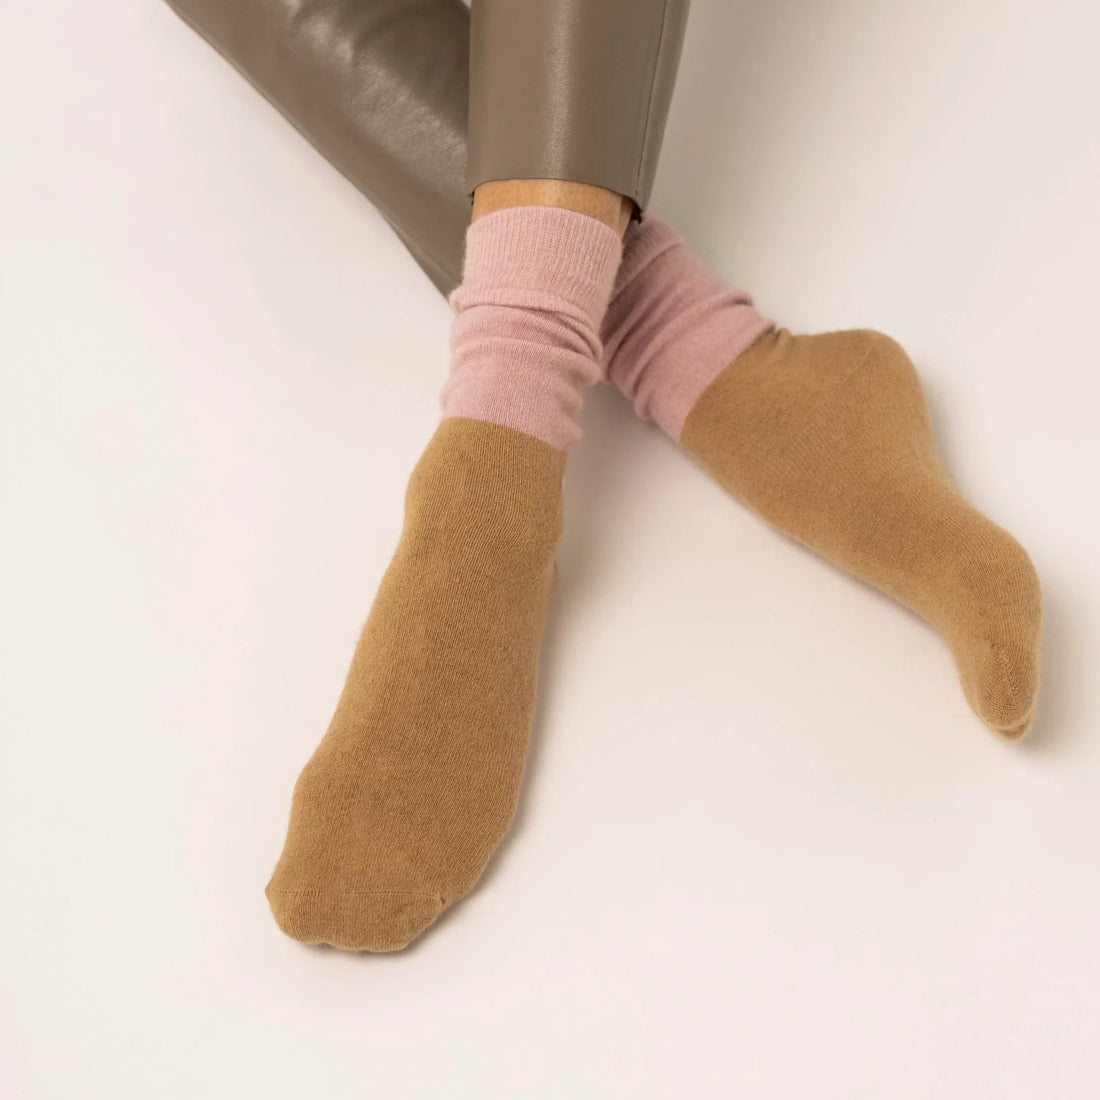 Nooan Socks - Dunedin, Marshmallow Pink + Beige - The Flower Crate